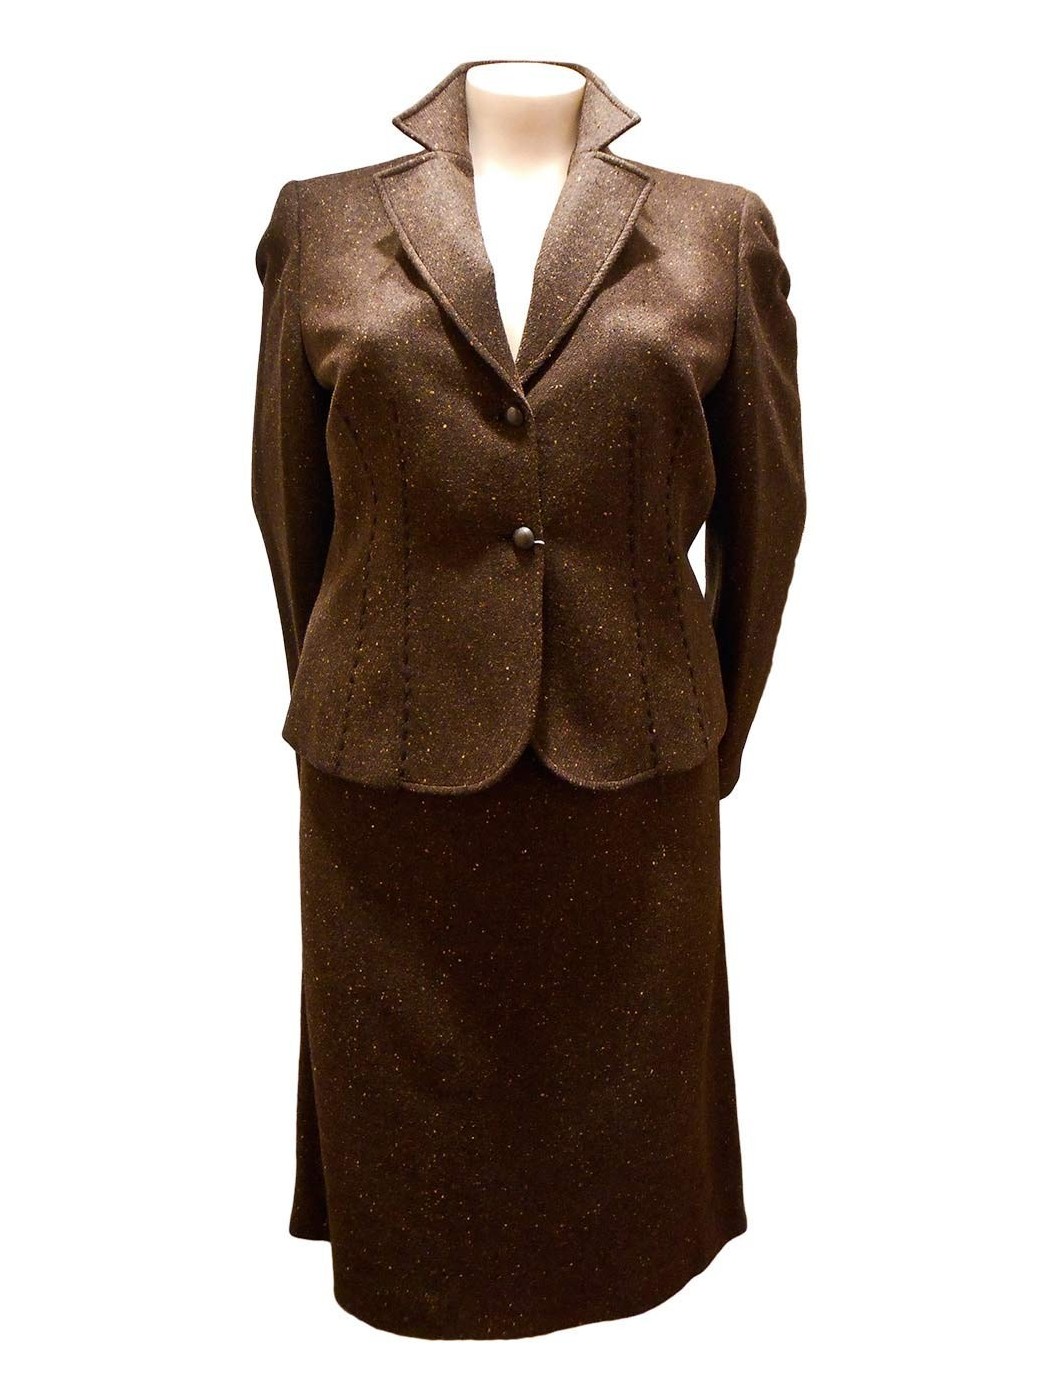 Brown tweed suit